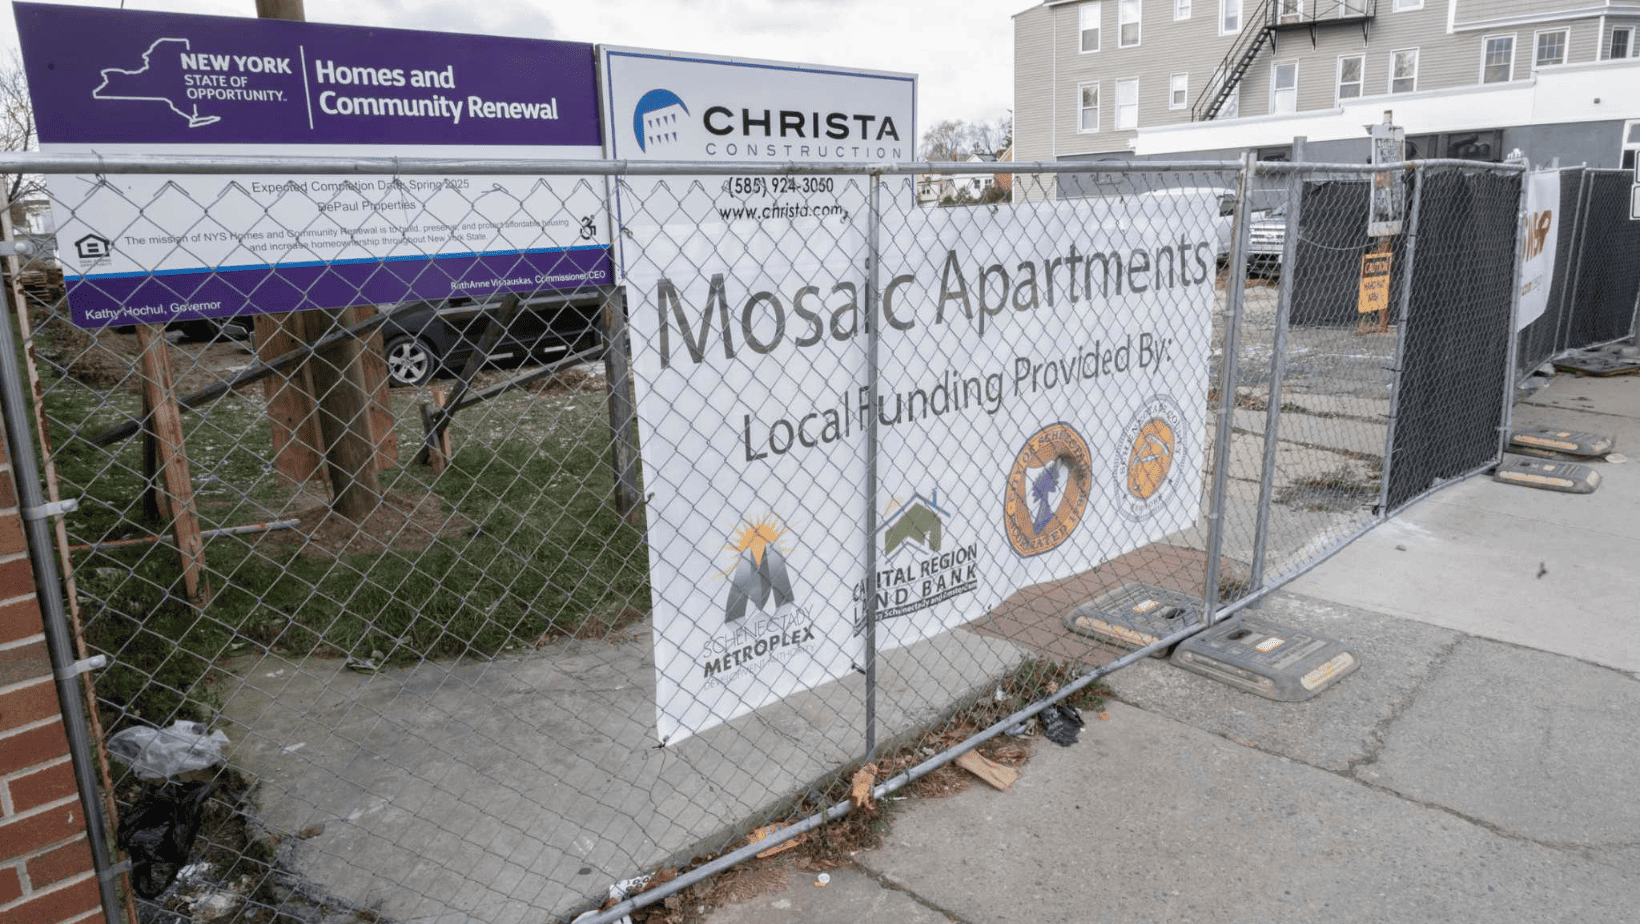 Mosaic Apartments Construction Site